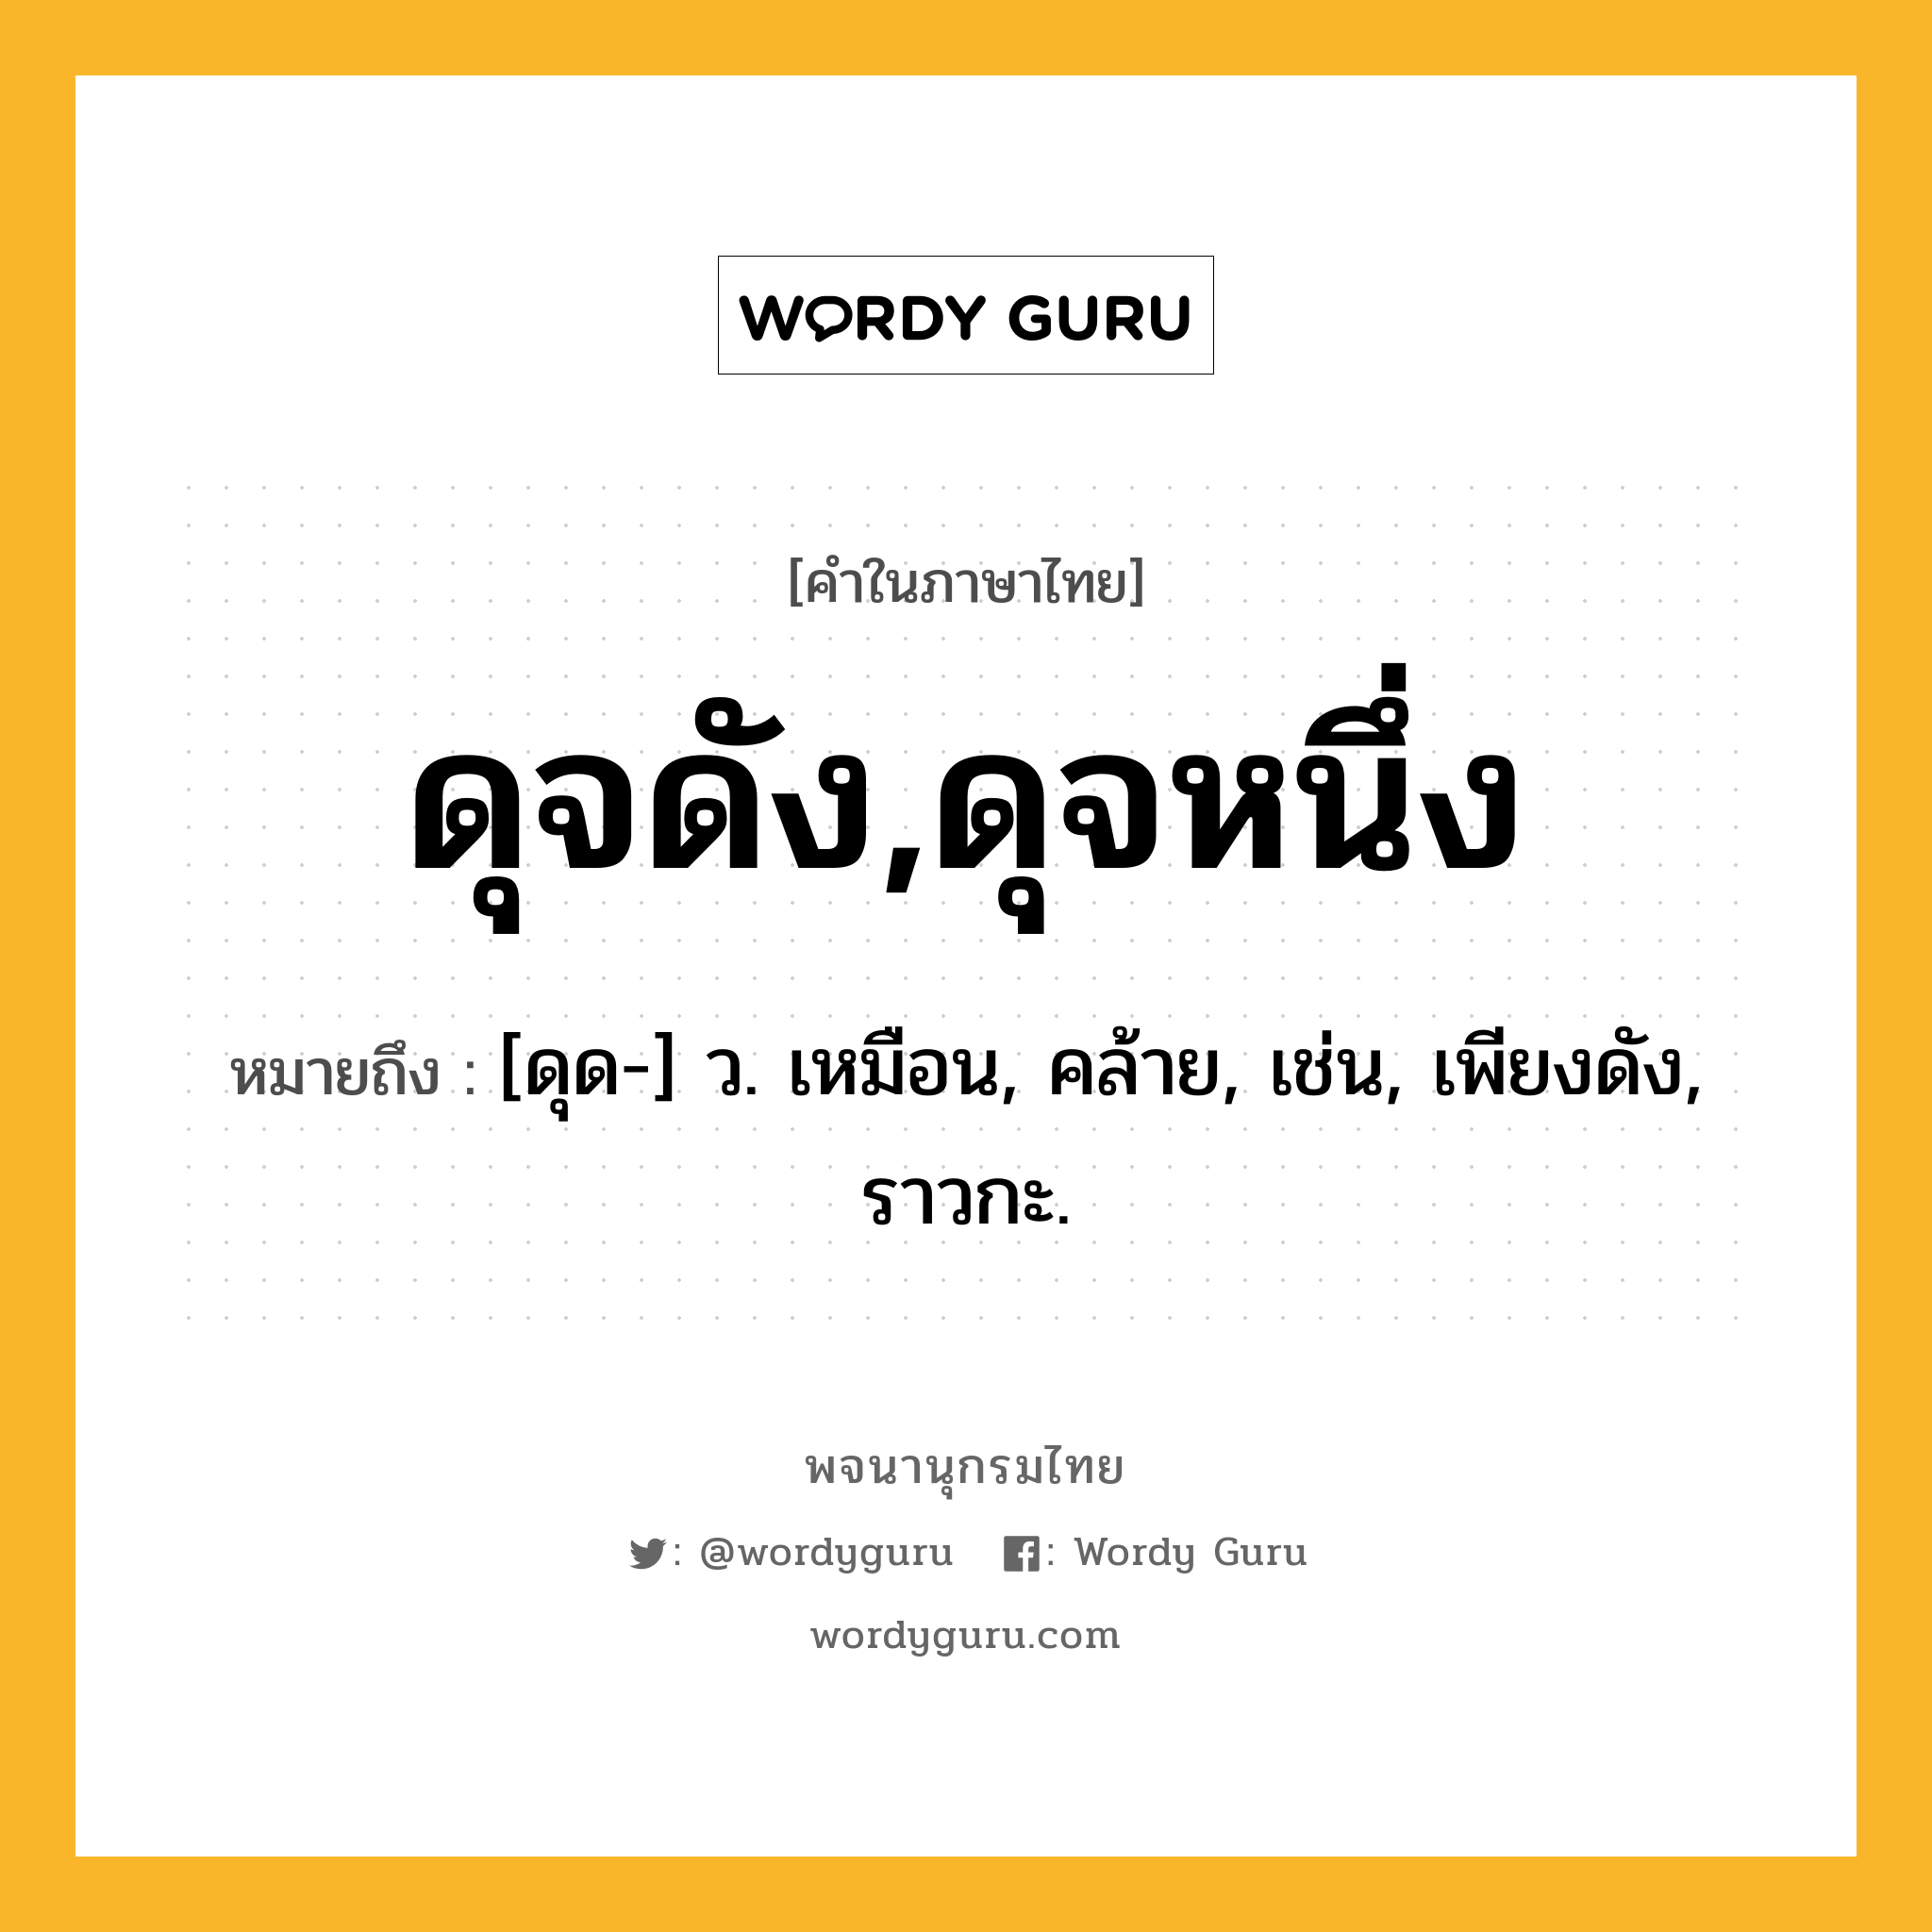 ดุจดัง,ดุจหนึ่ง ความหมาย หมายถึงอะไร?, คำในภาษาไทย ดุจดัง,ดุจหนึ่ง หมายถึง [ดุด-] ว. เหมือน, คล้าย, เช่น, เพียงดัง, ราวกะ.